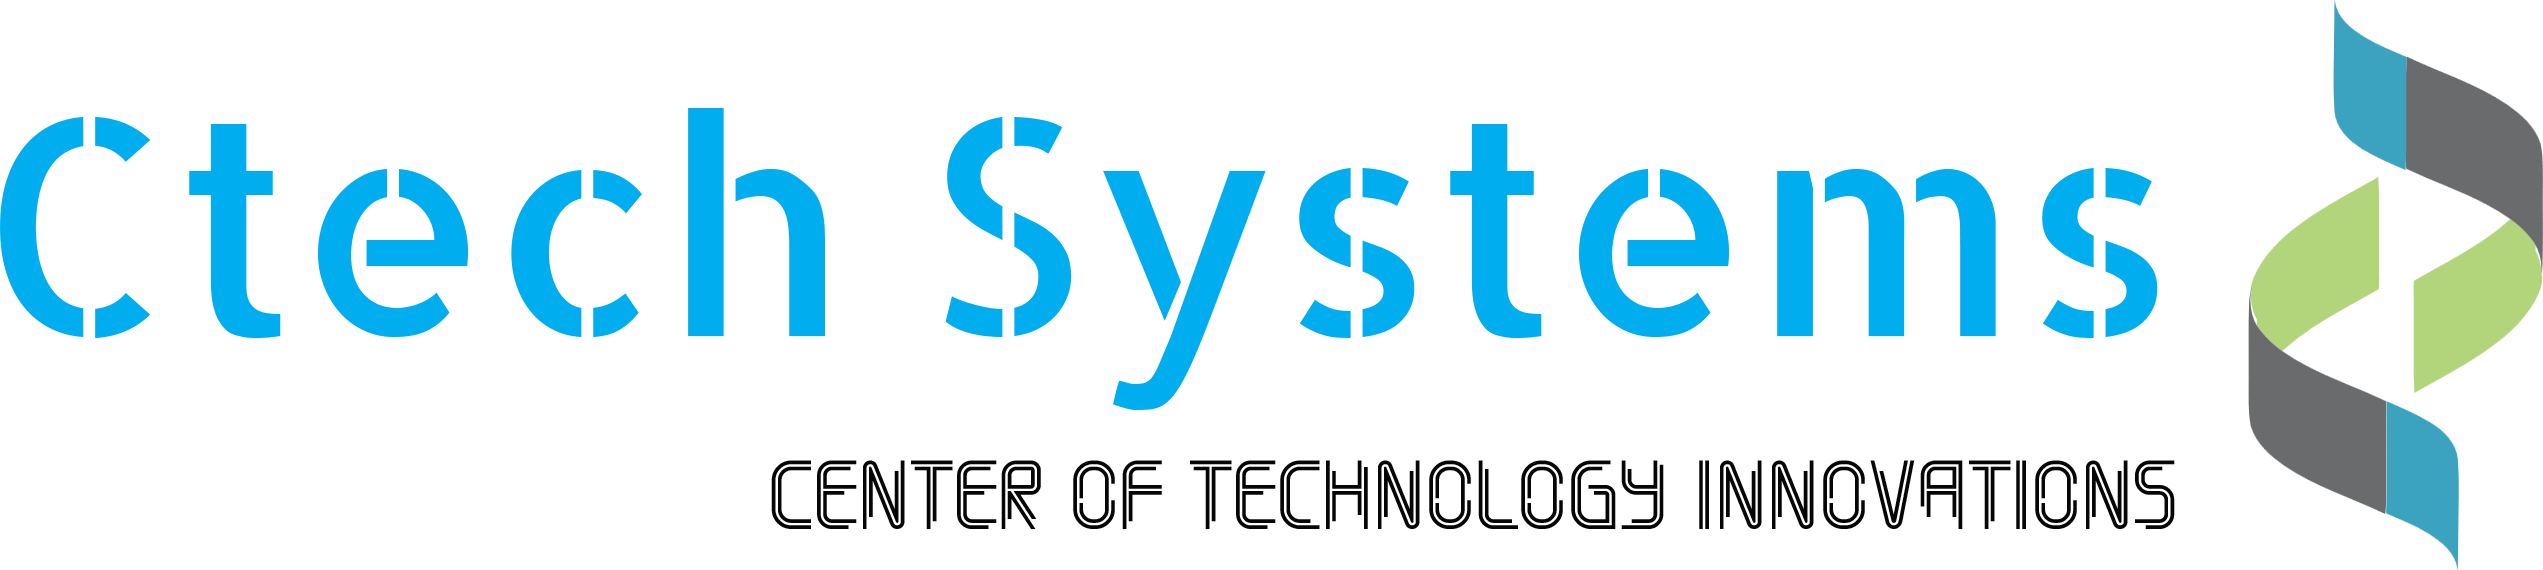 Ctech Systems Ltd